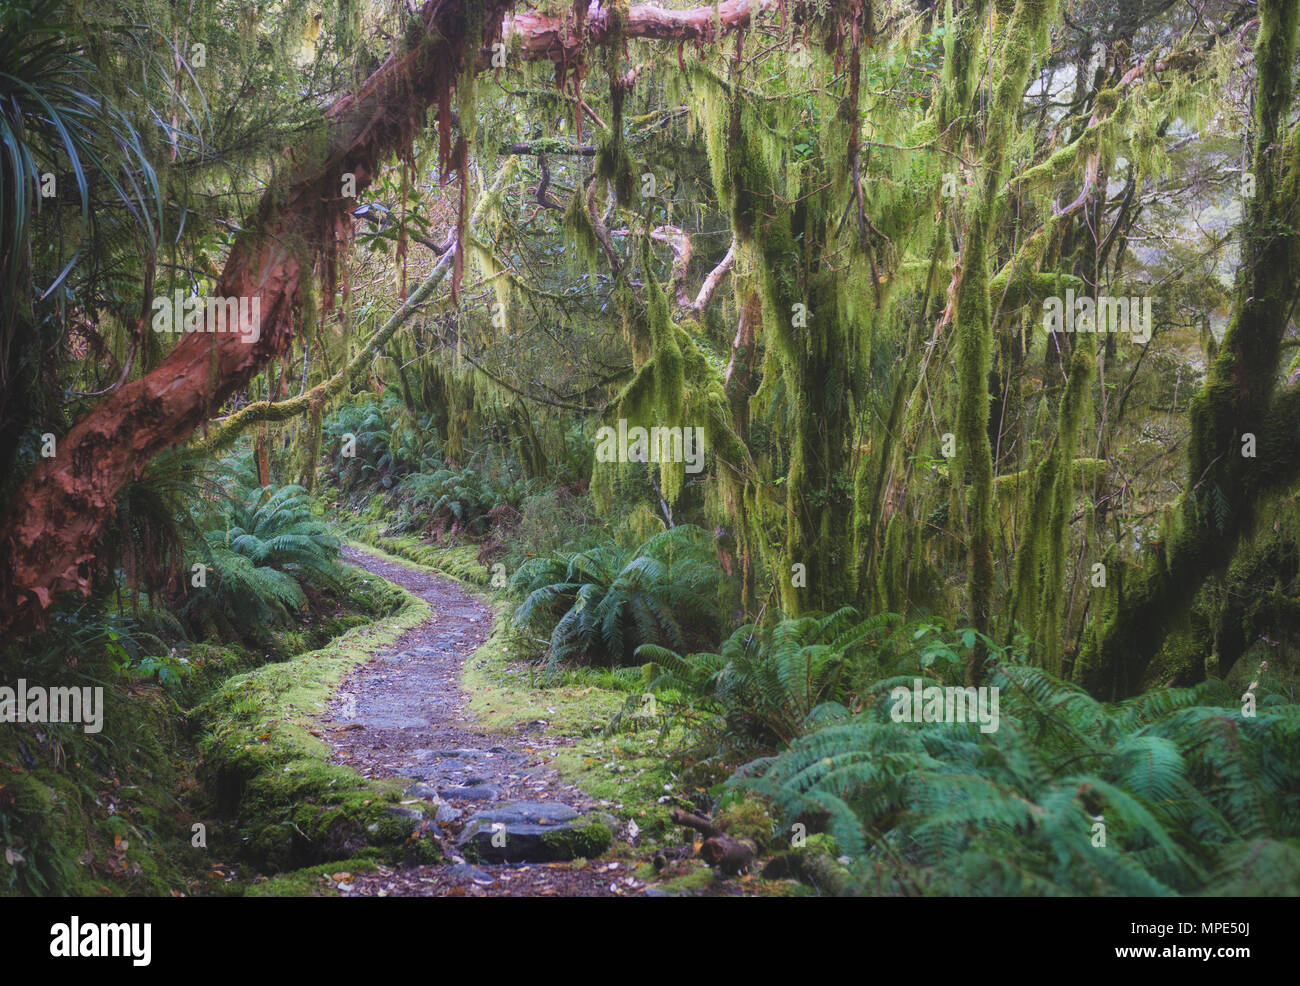 New Zealand rainforest details landscape picture Stock Photo